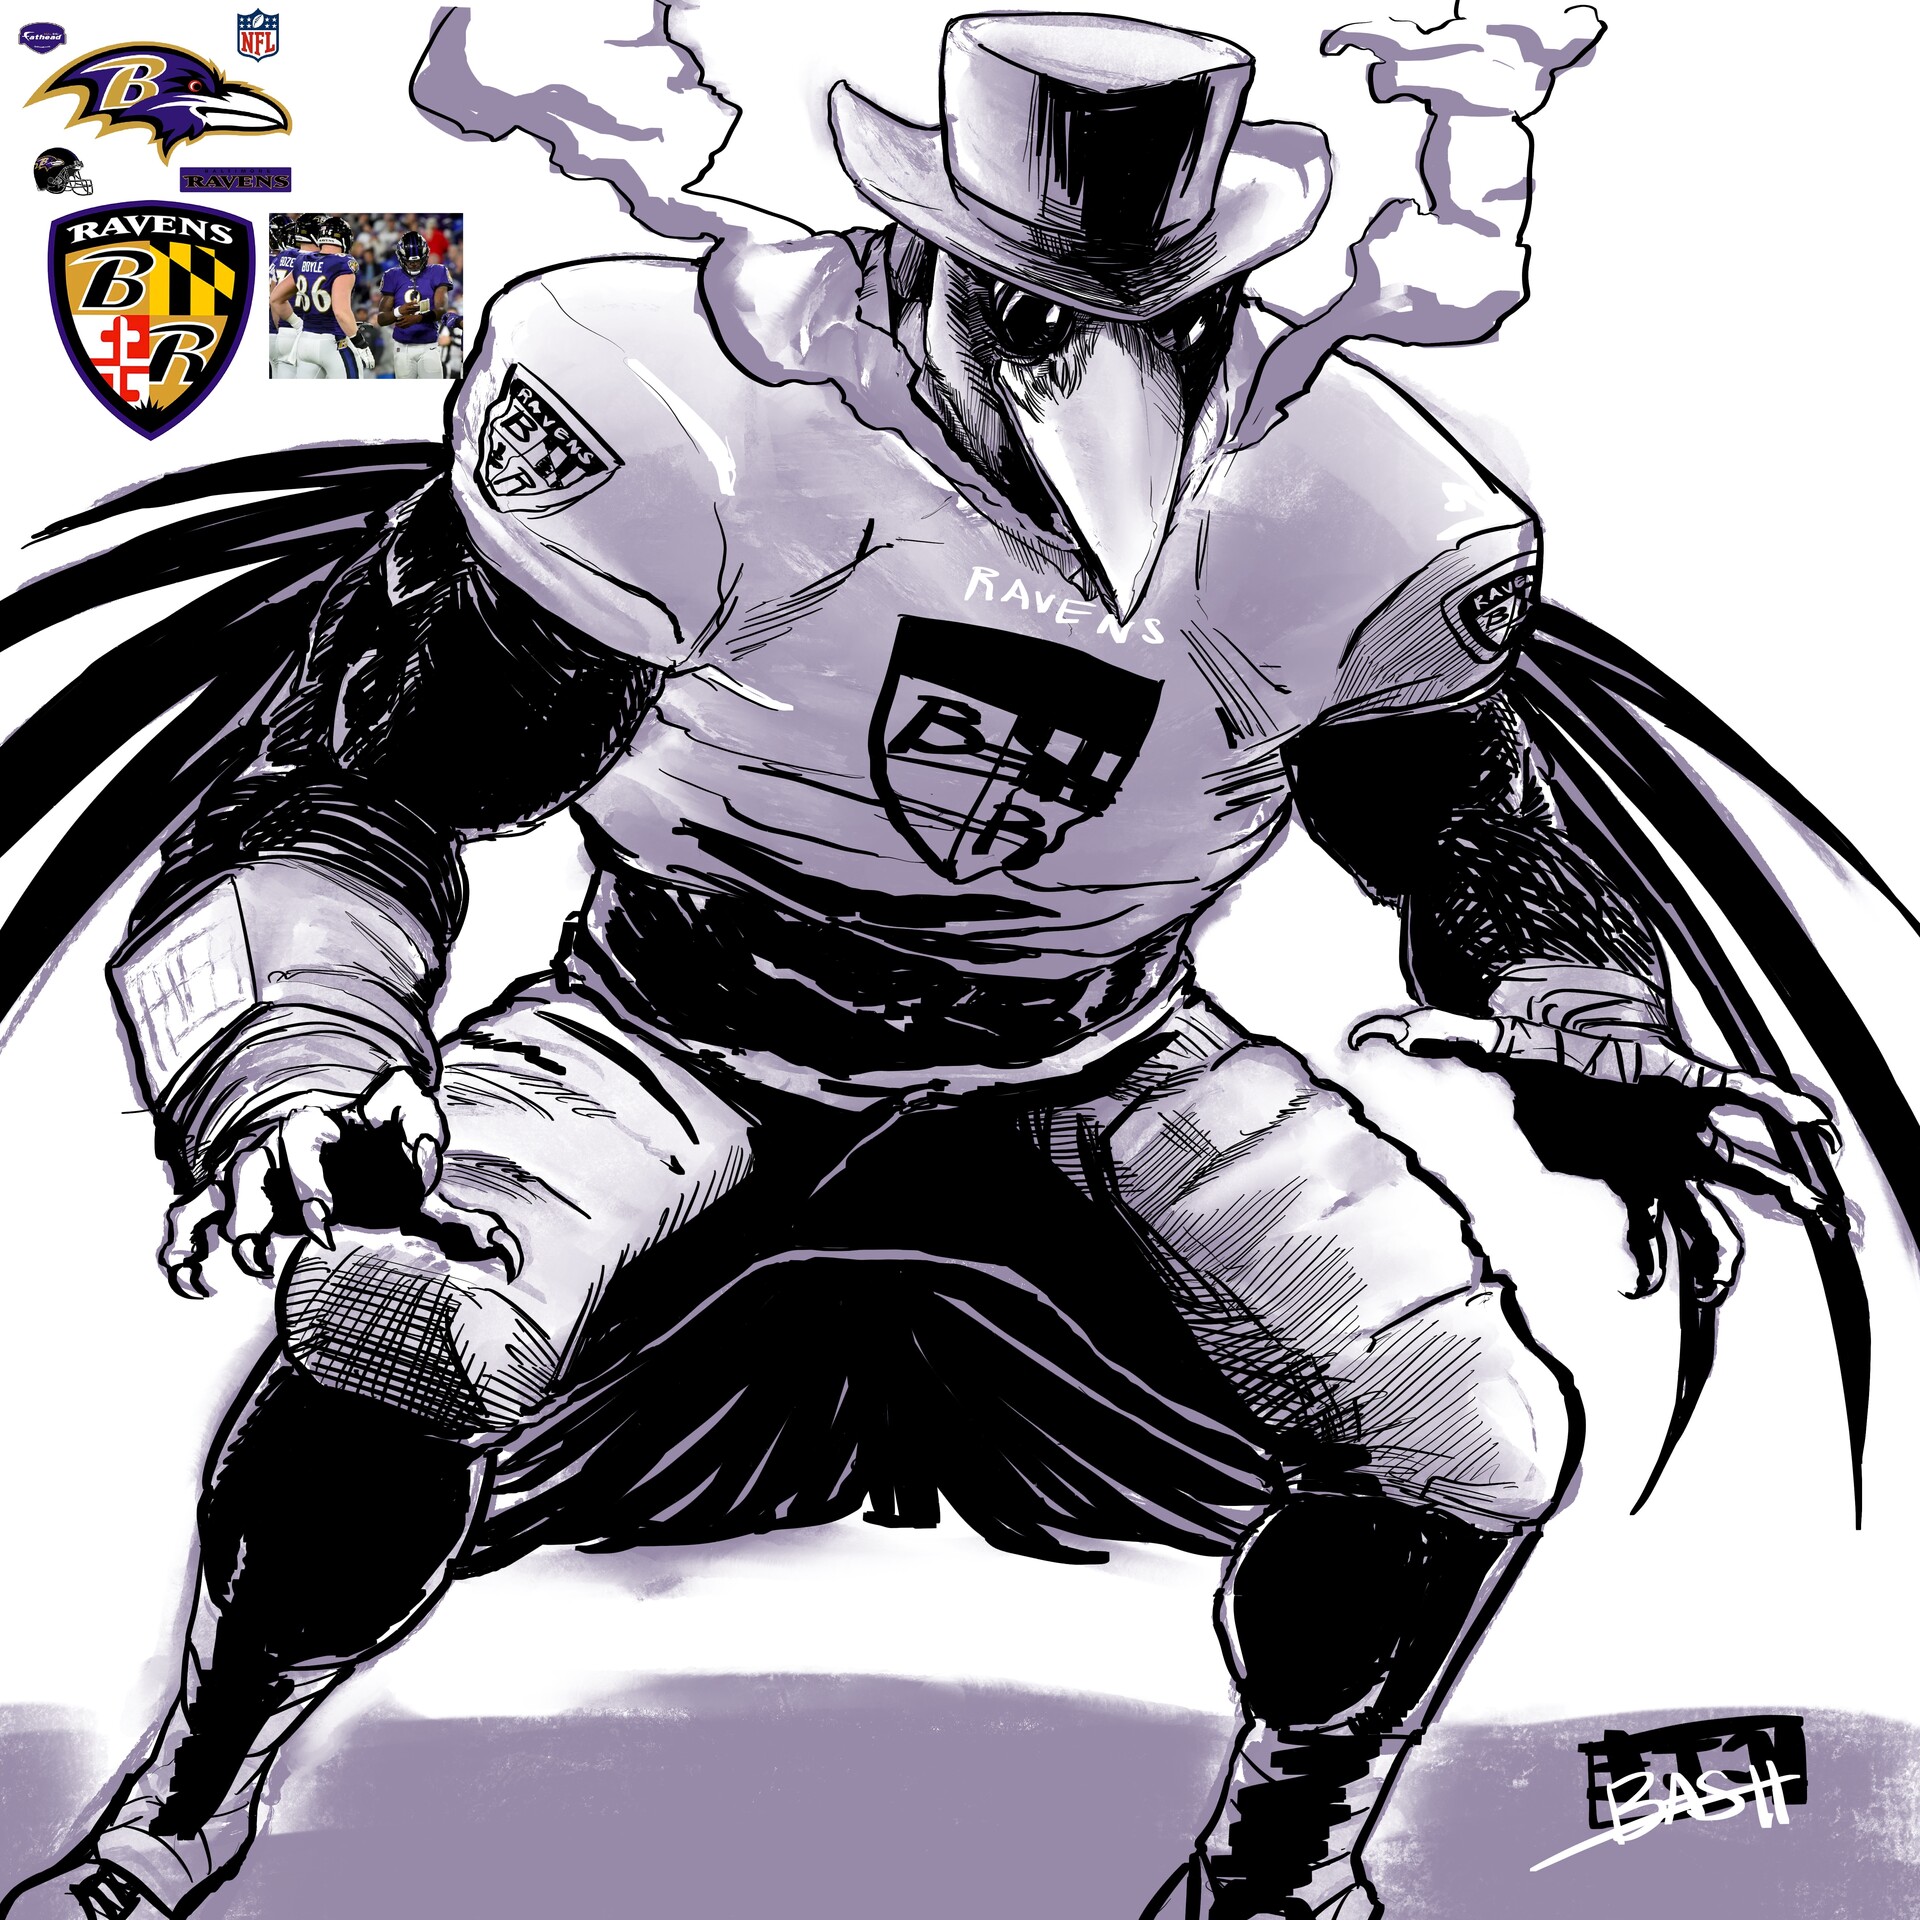 ArtStation - Baltimore Ravens Plague concept